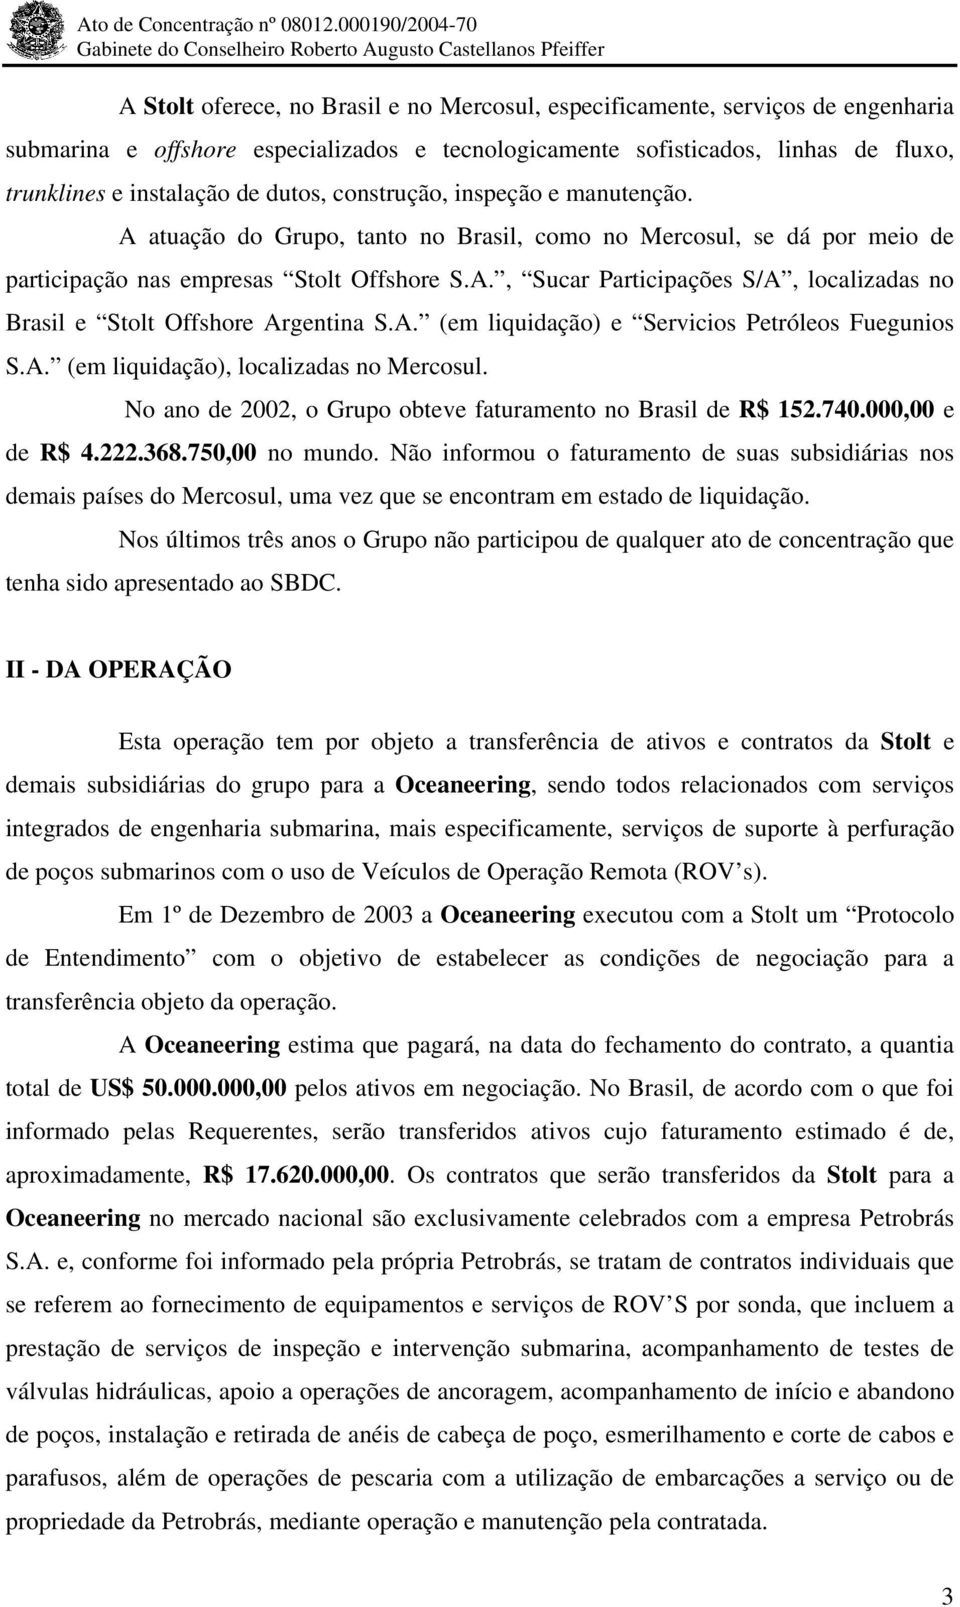 A. (em liquidação) e Servicios Petróleos Fuegunios S.A. (em liquidação), localizadas no Mercosul. No ano de 2002, o Grupo obteve faturamento no Brasil de R$ 152.740.000,00 e de R$ 4.222.368.